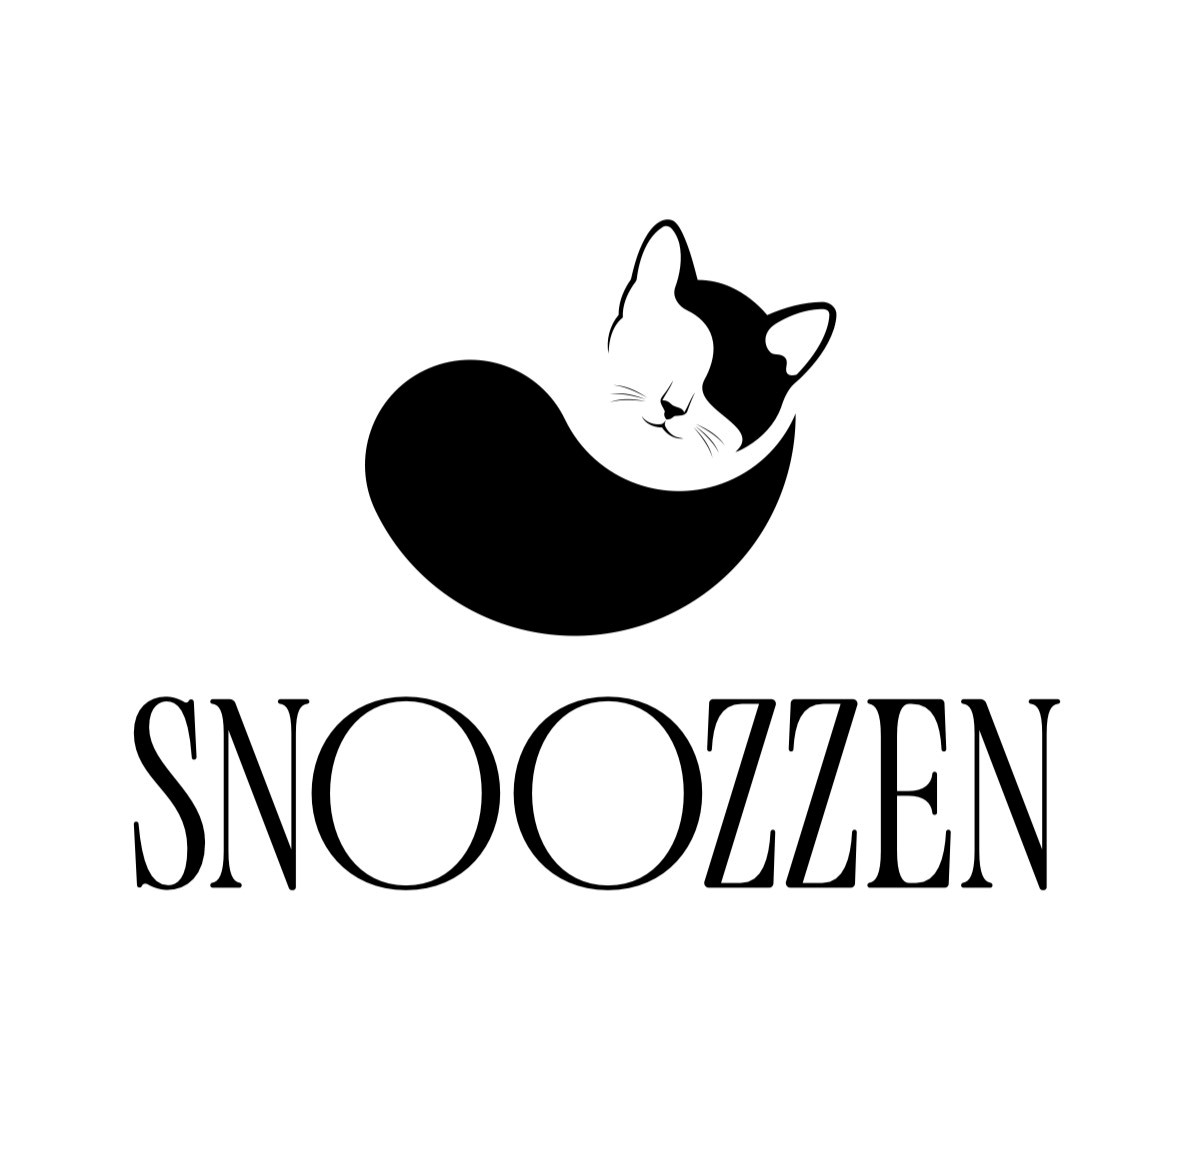 Snoozzen (Inside GS Aveda) logo